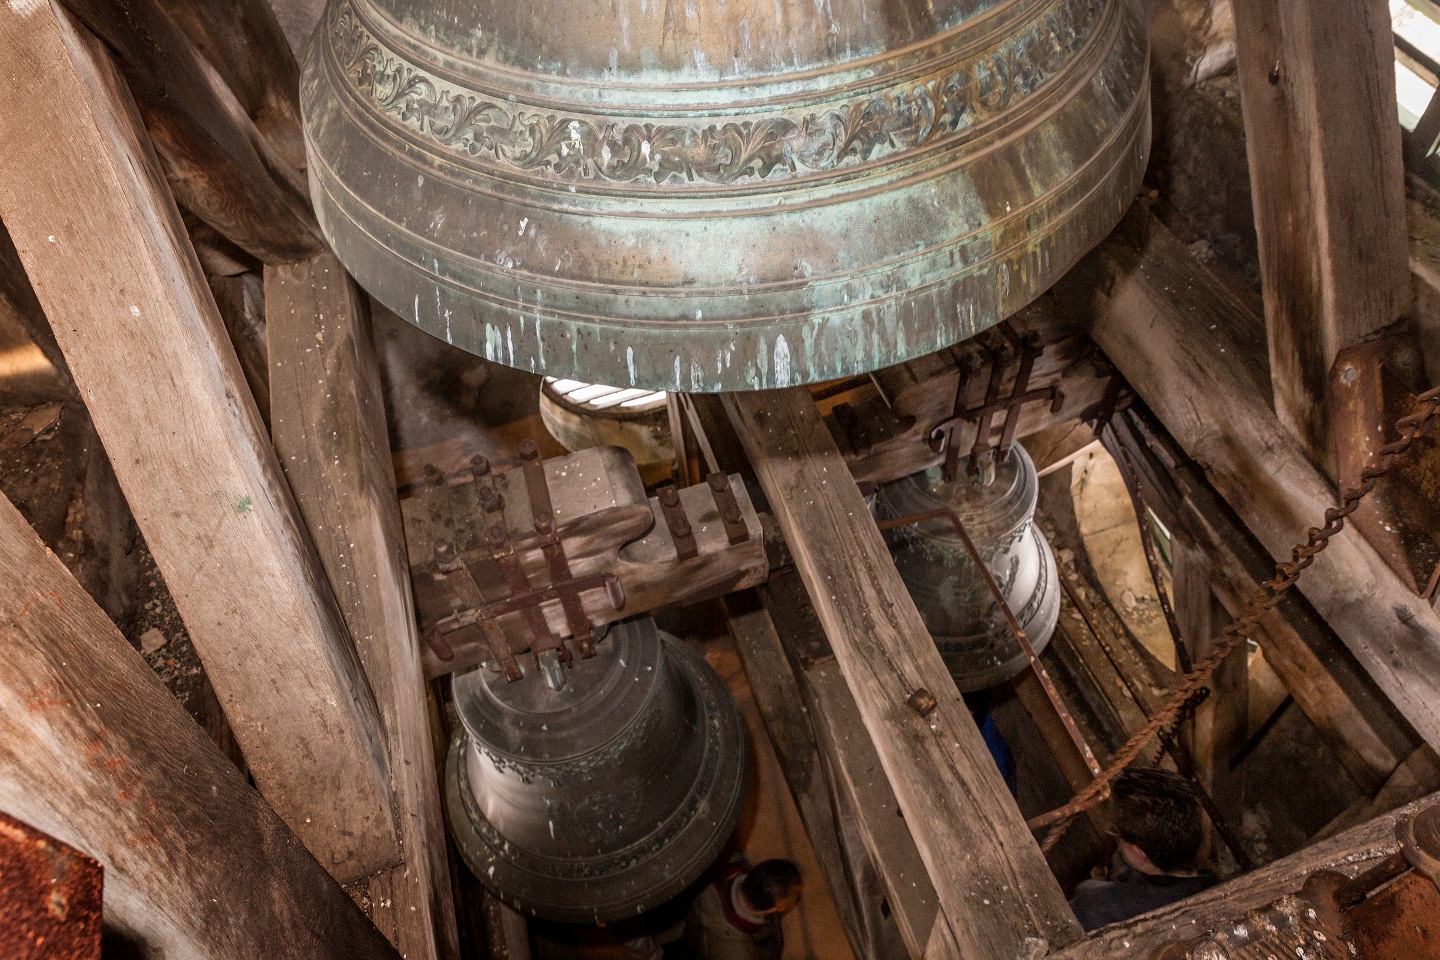 les trois cloches de saint-george pèsent respectivement 400, 700 et 1400 kilos.